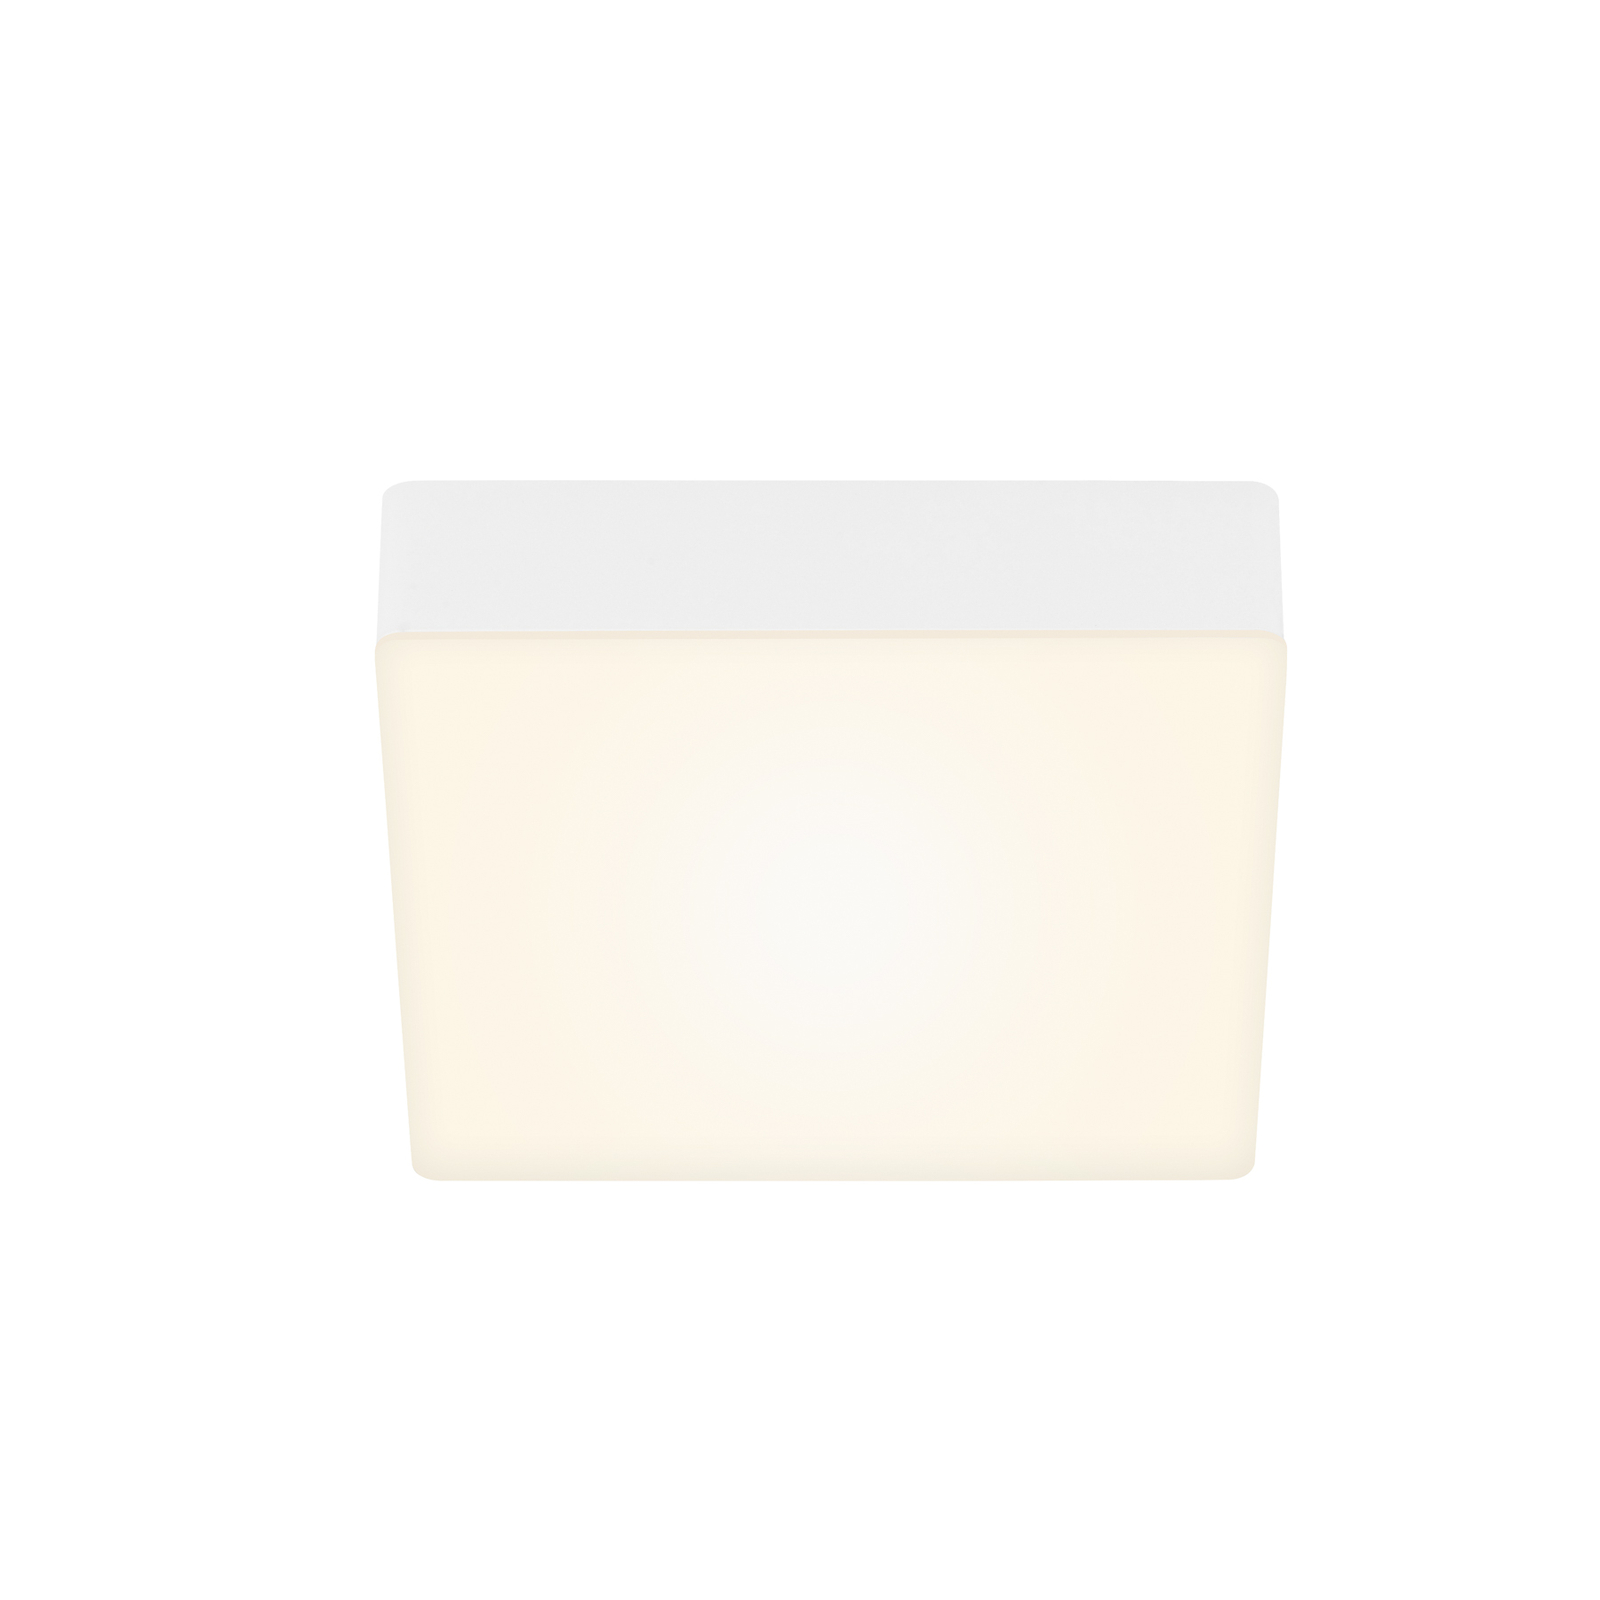 LED-Deckenleuchte Flame, 15,7 x 15,7 cm, weiß